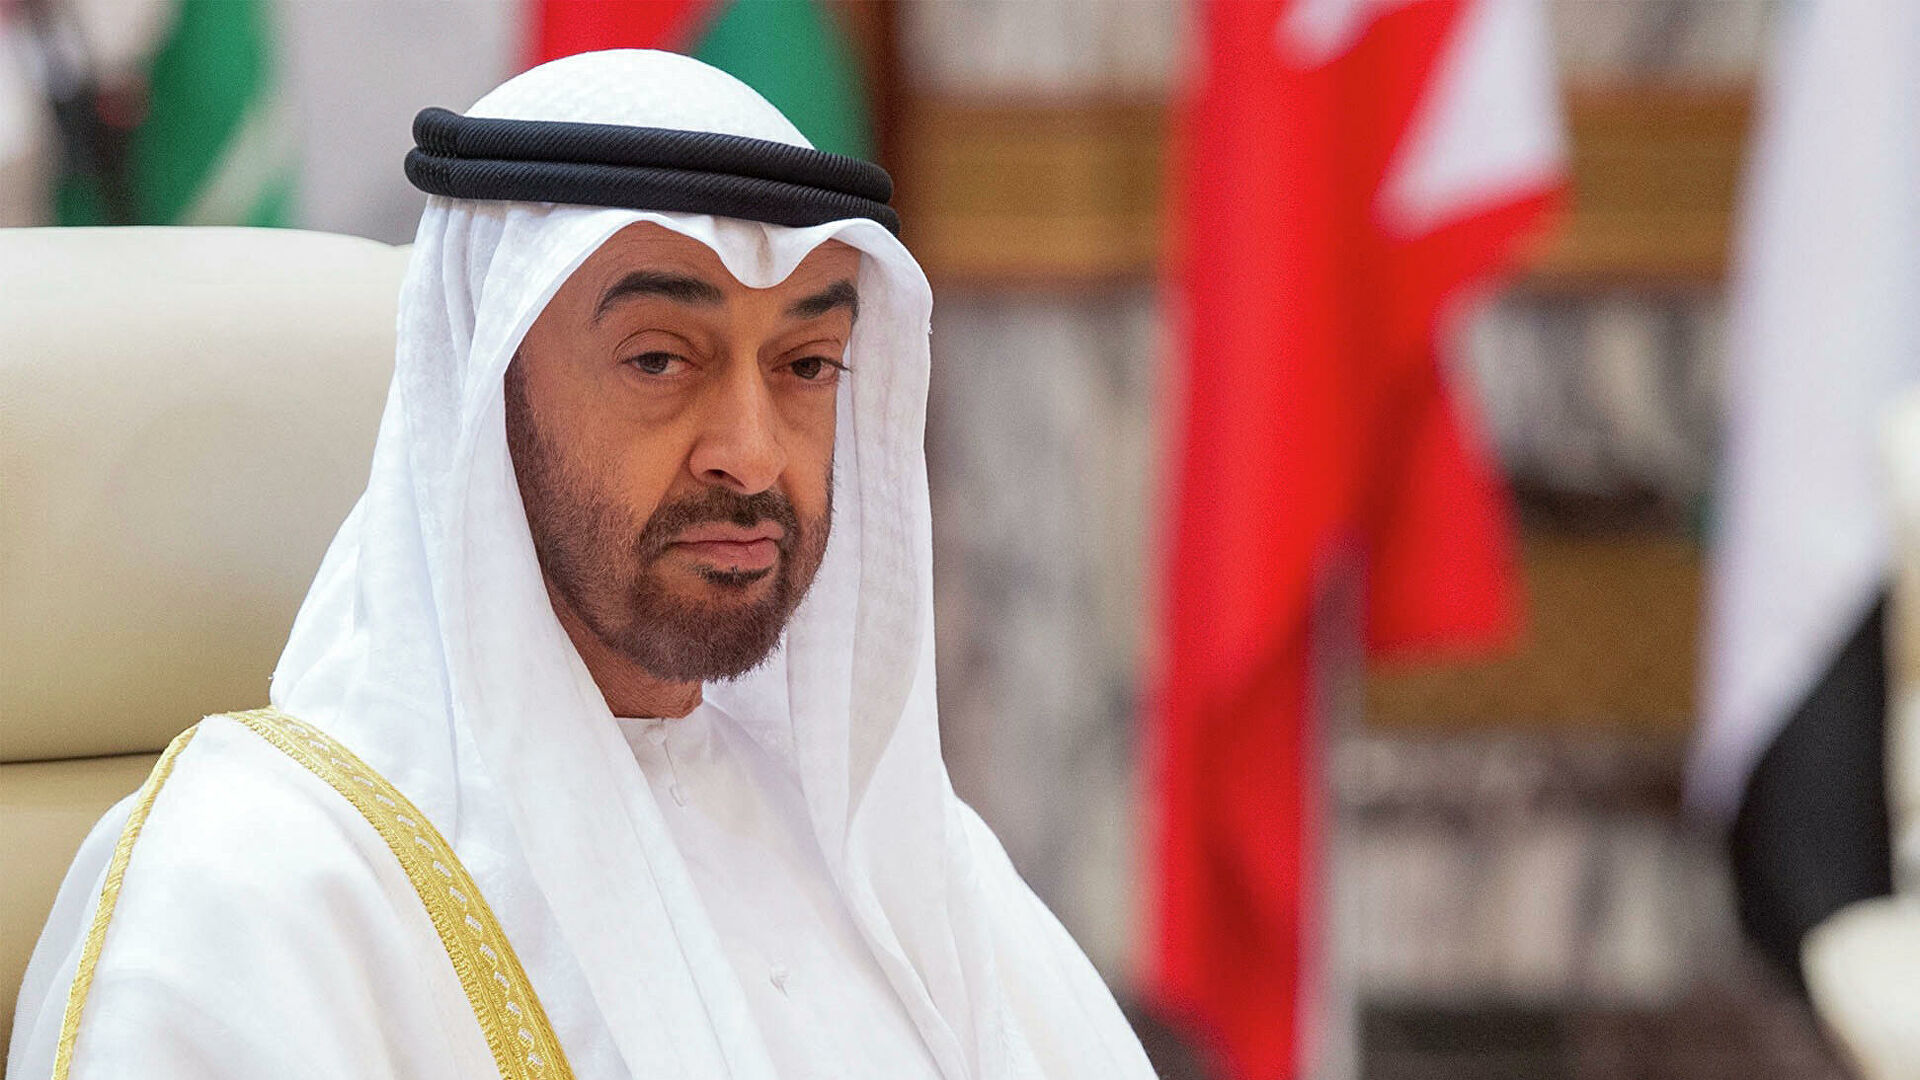 阿布扎比王储当选阿联酋总统